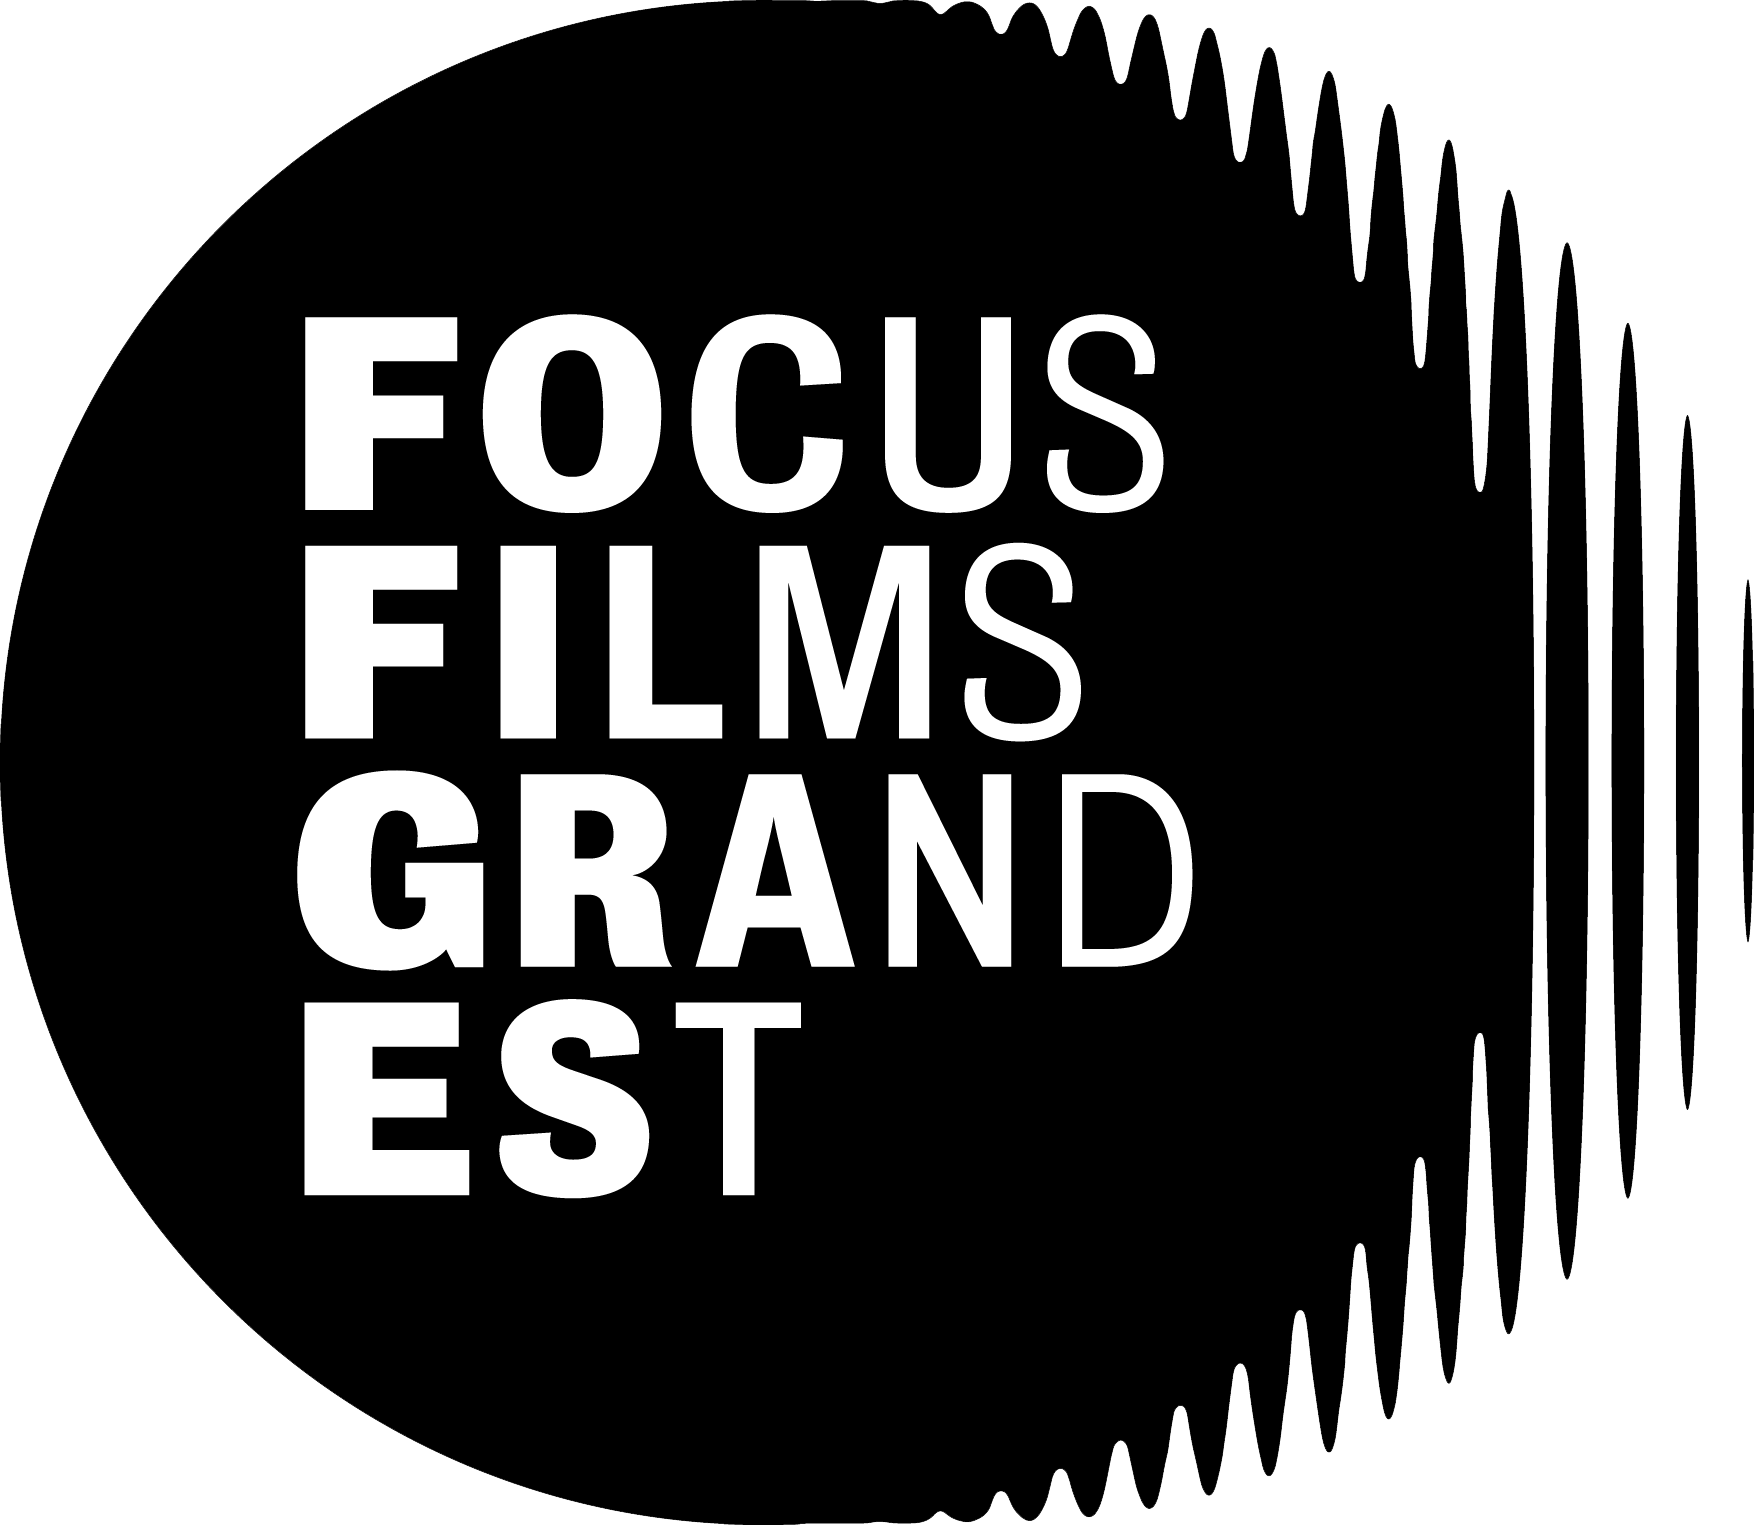 IDÉAL CINÉMA - Samedi - Focus Films Grand Est